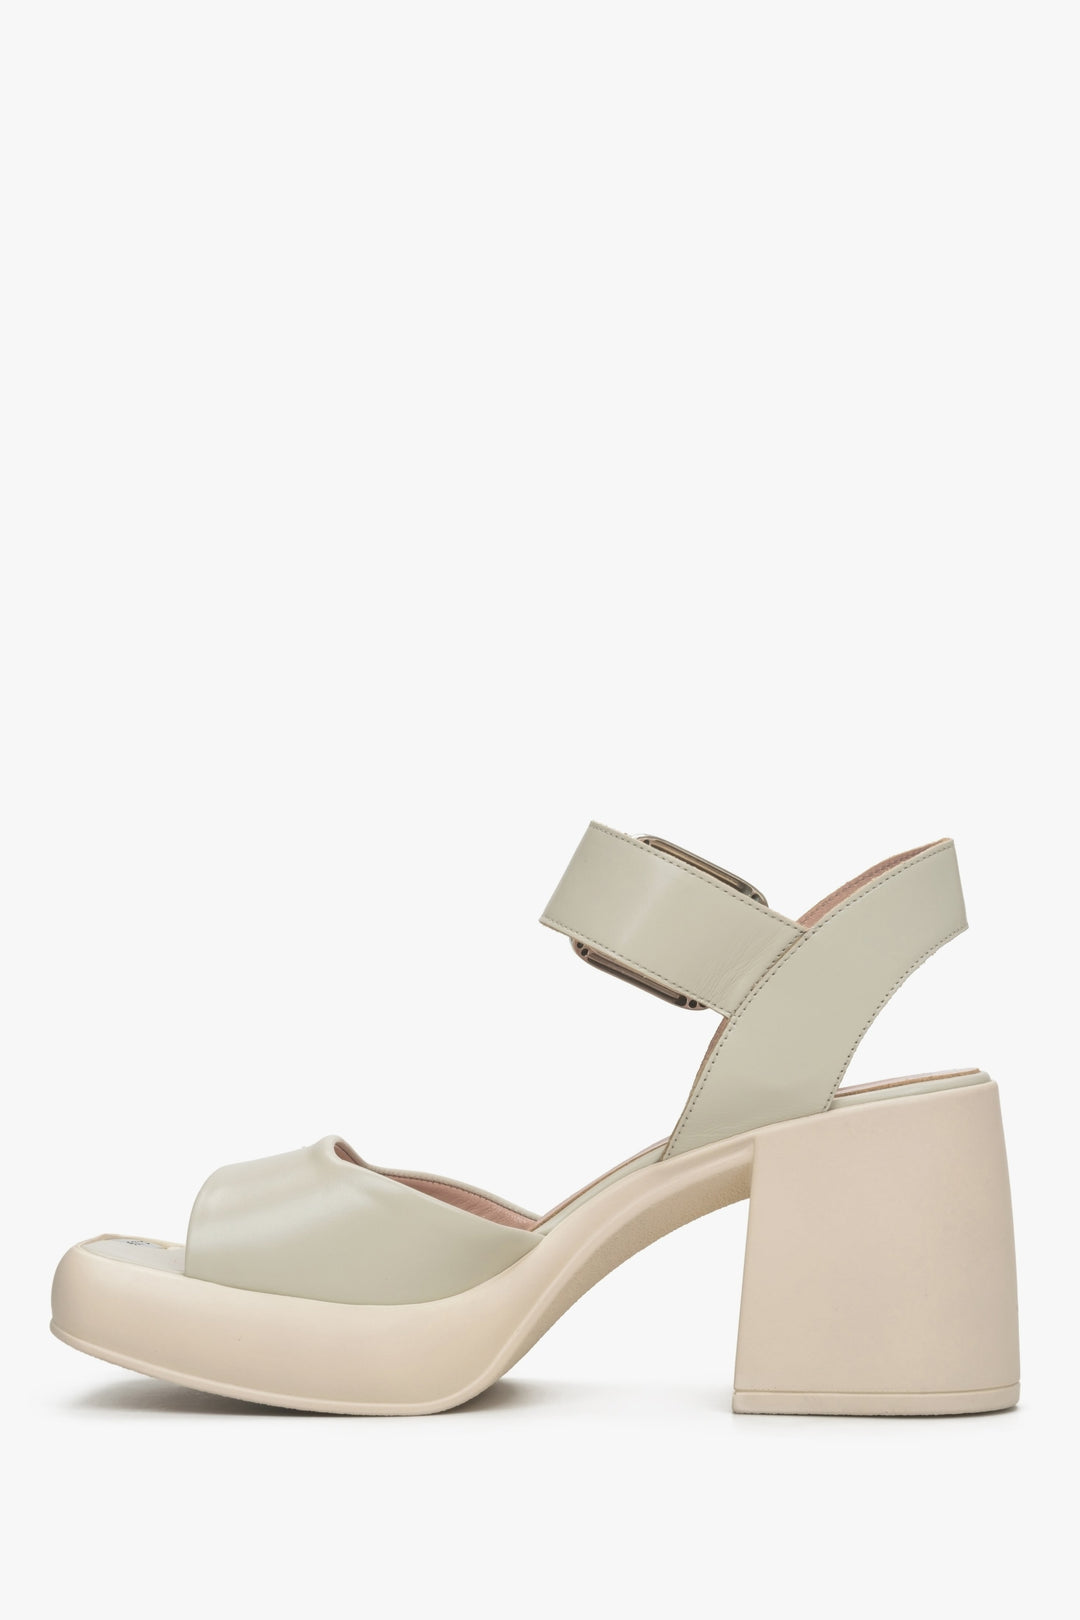 Stylowe beżowo-szare sandały damskie na stabilnym słupku marki Estro - profil buta.